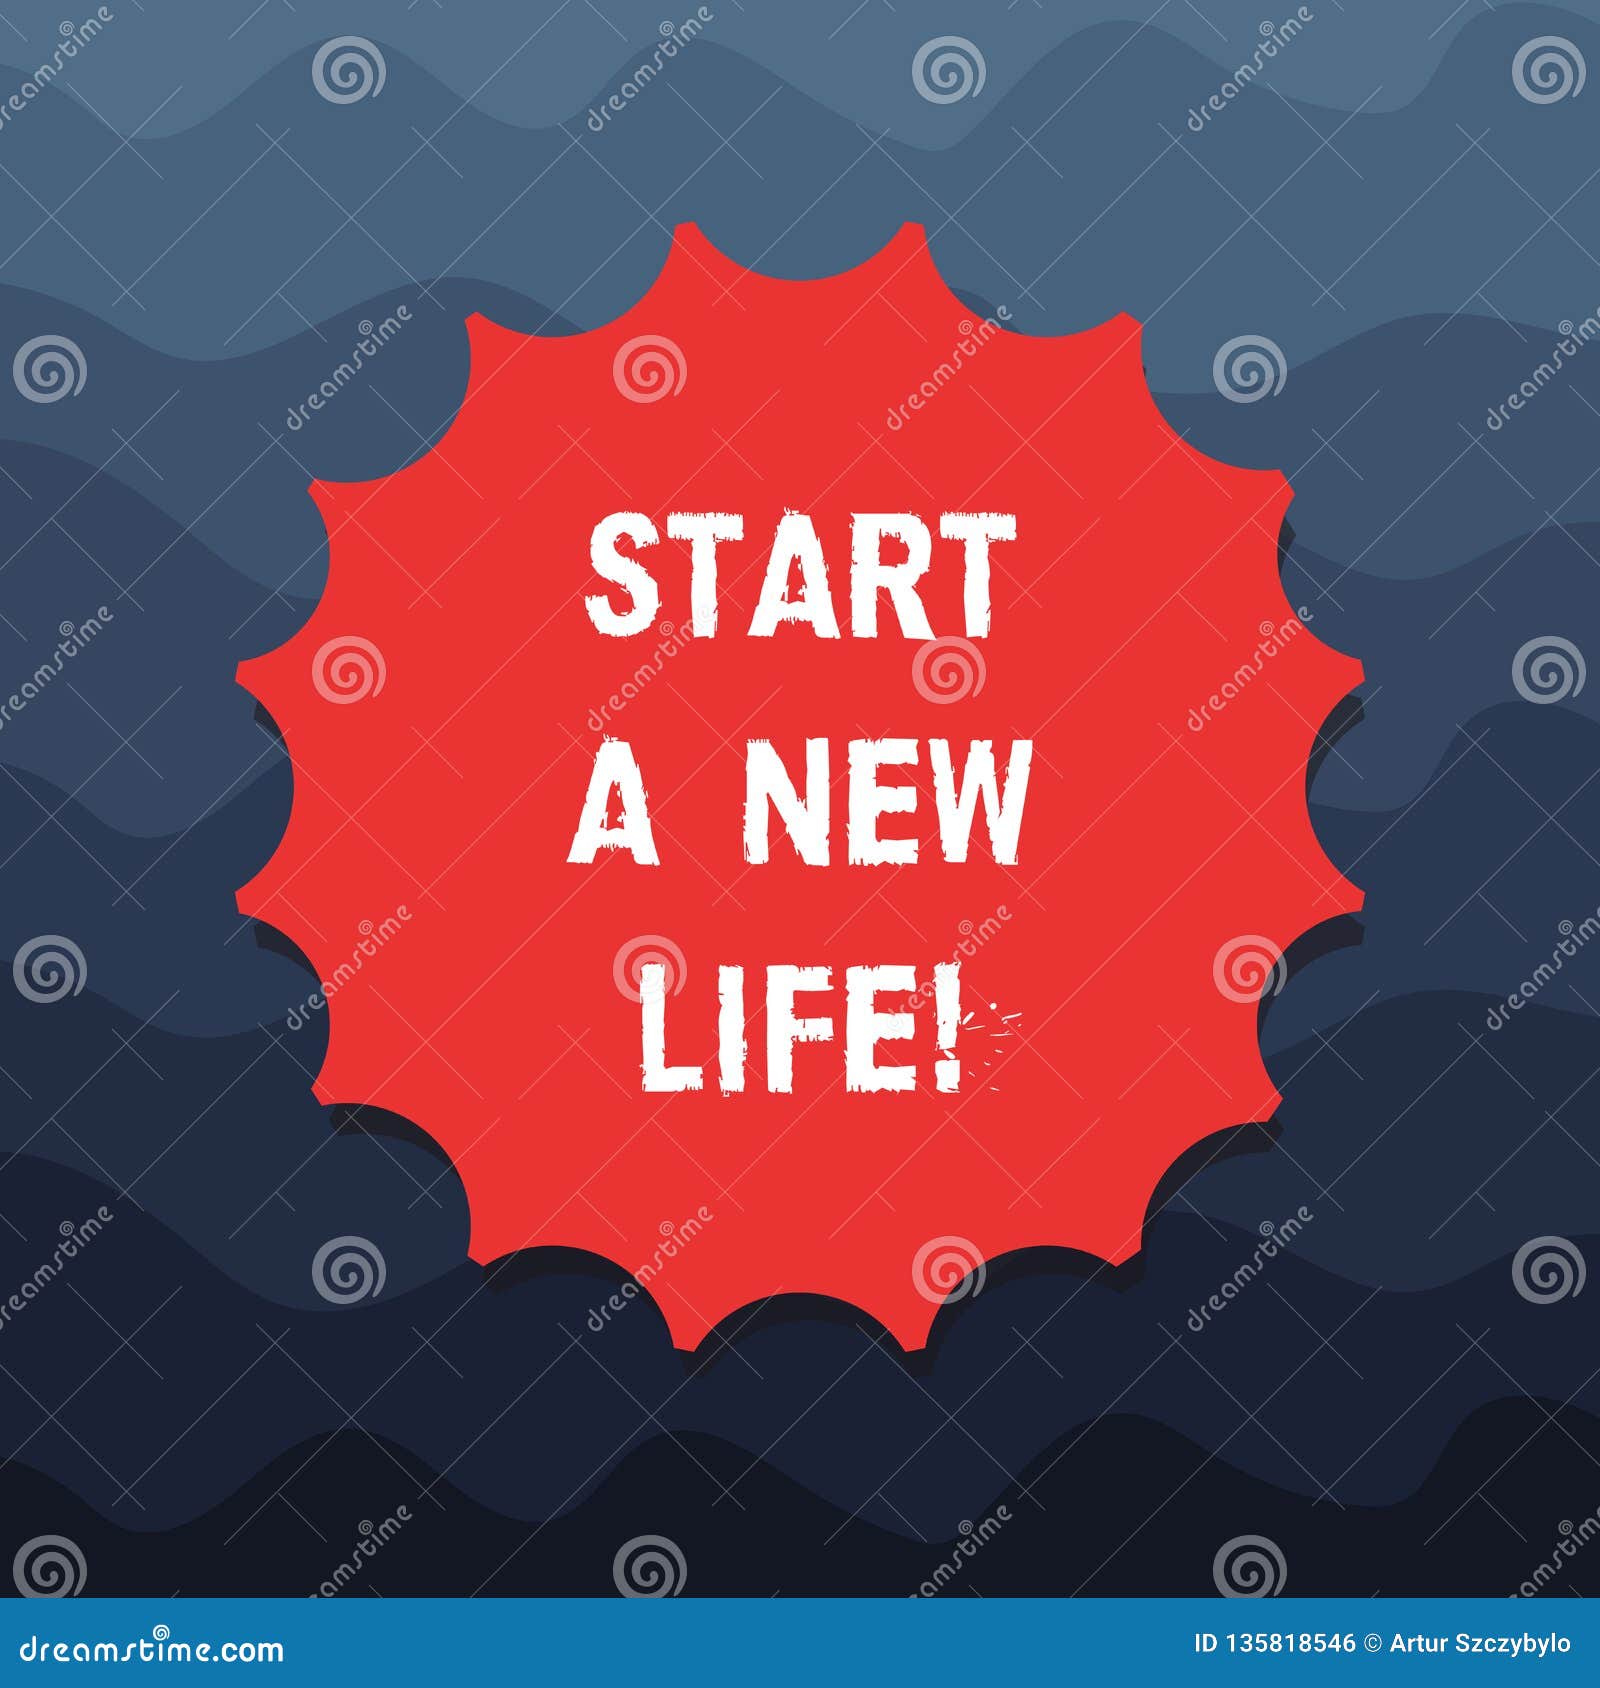 Start a new life